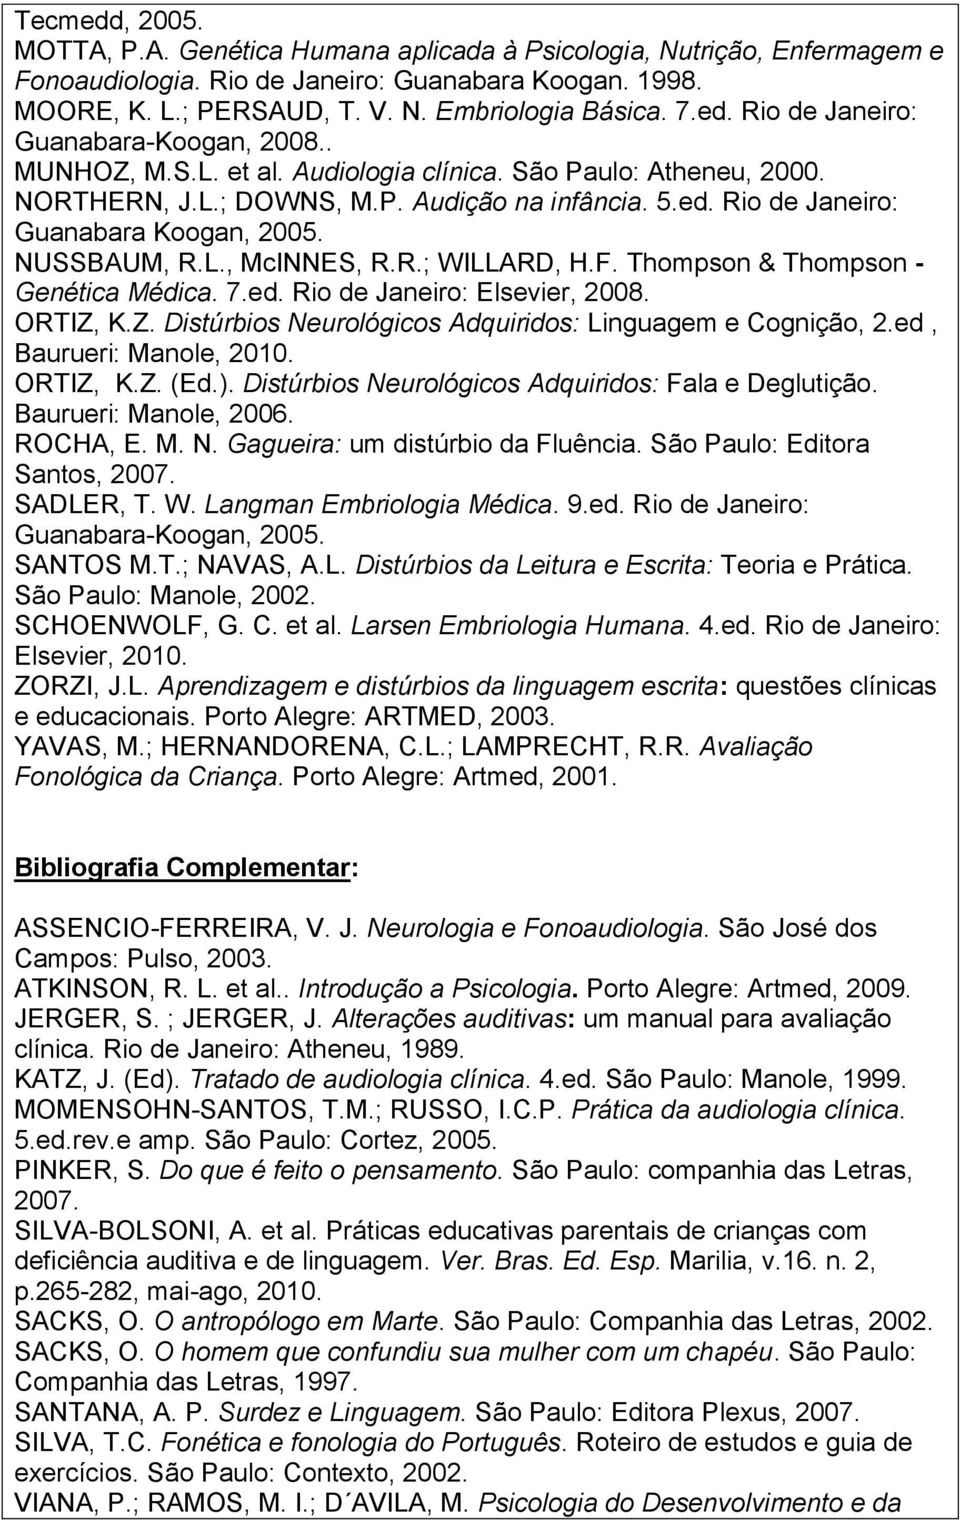 NUSSBAUM, R.L., McINNES, R.R.; WILLARD, H.F. Thompson & Thompson - Genética Médica. 7.ed. Rio de Janeiro: Elsevier, 2008. ORTIZ, K.Z. Distúrbios Neurológicos Adquiridos: Linguagem e Cognição, 2.